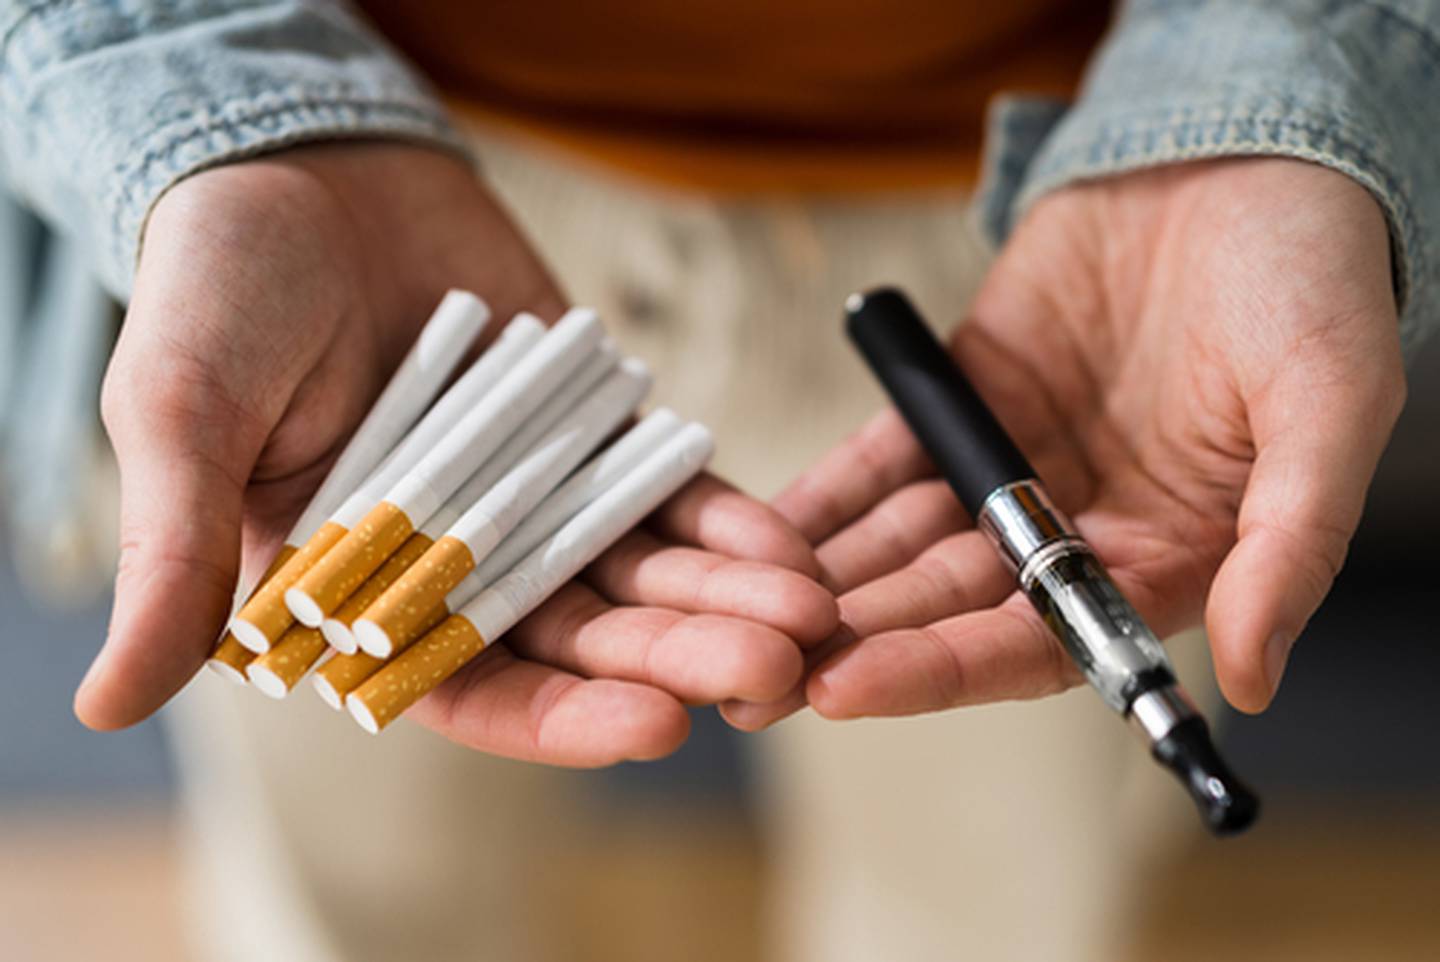 Ciencia revela que vapear es mucho peor para la salud que fumar y el daño  es más rápido frente a los cigarrillos convencionales